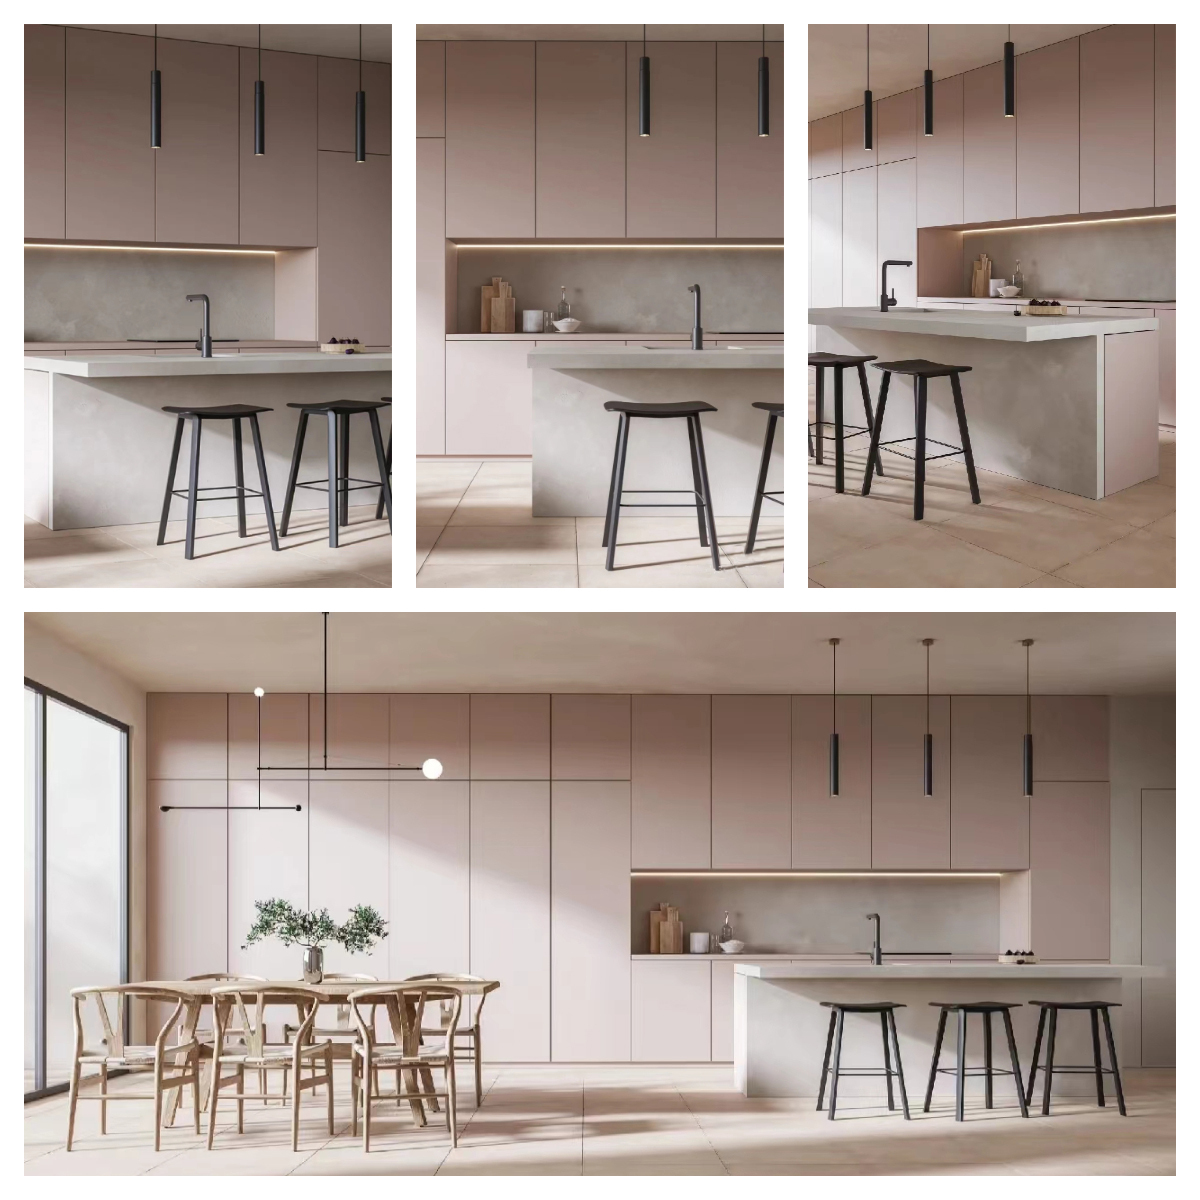 Pink kitchen cabinet